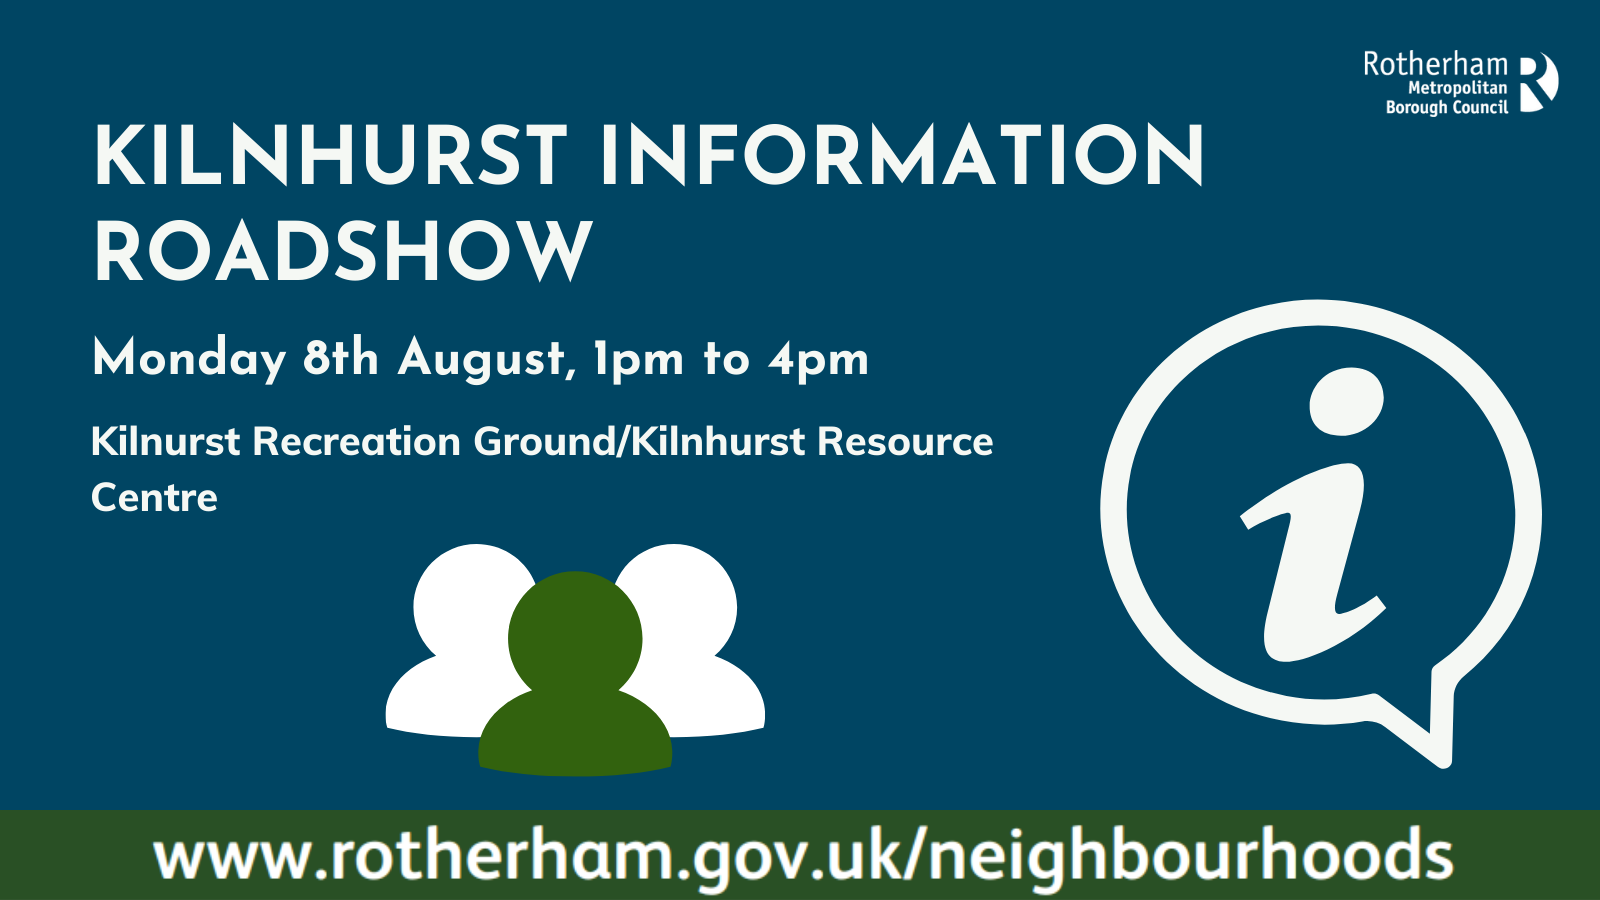 Kilnhurst information roadshow